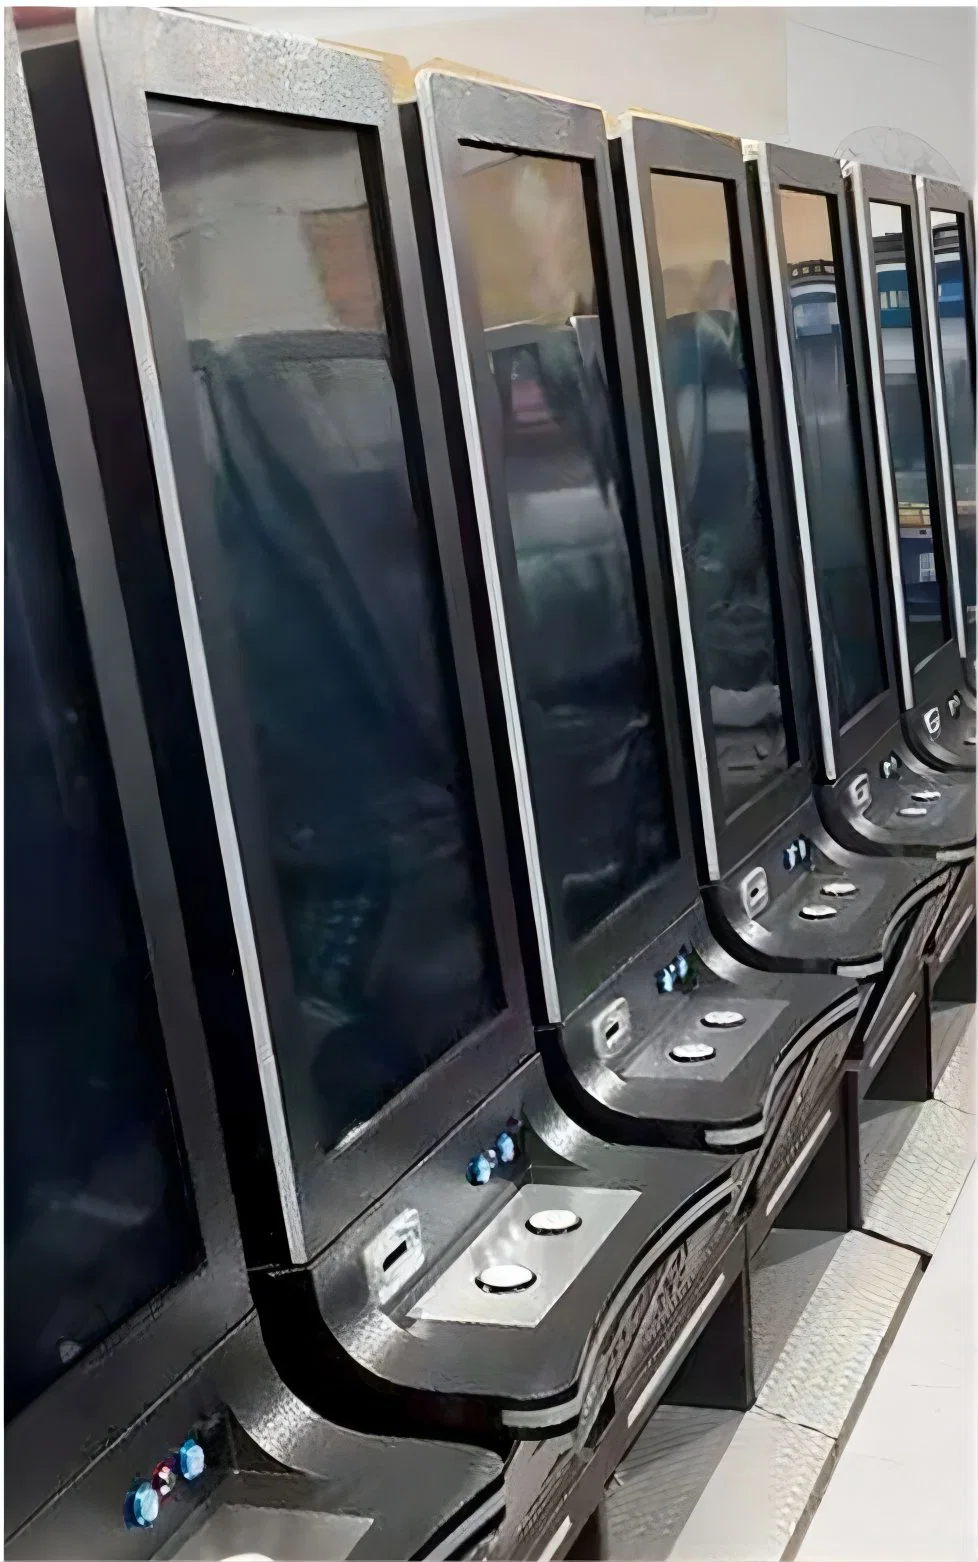 La pantalla táctil de la Lotería de ranura de Juegos de Azar Casino Arcade PCB de la máquina de la Junta de Control General PCBA servicio llave en mano en China